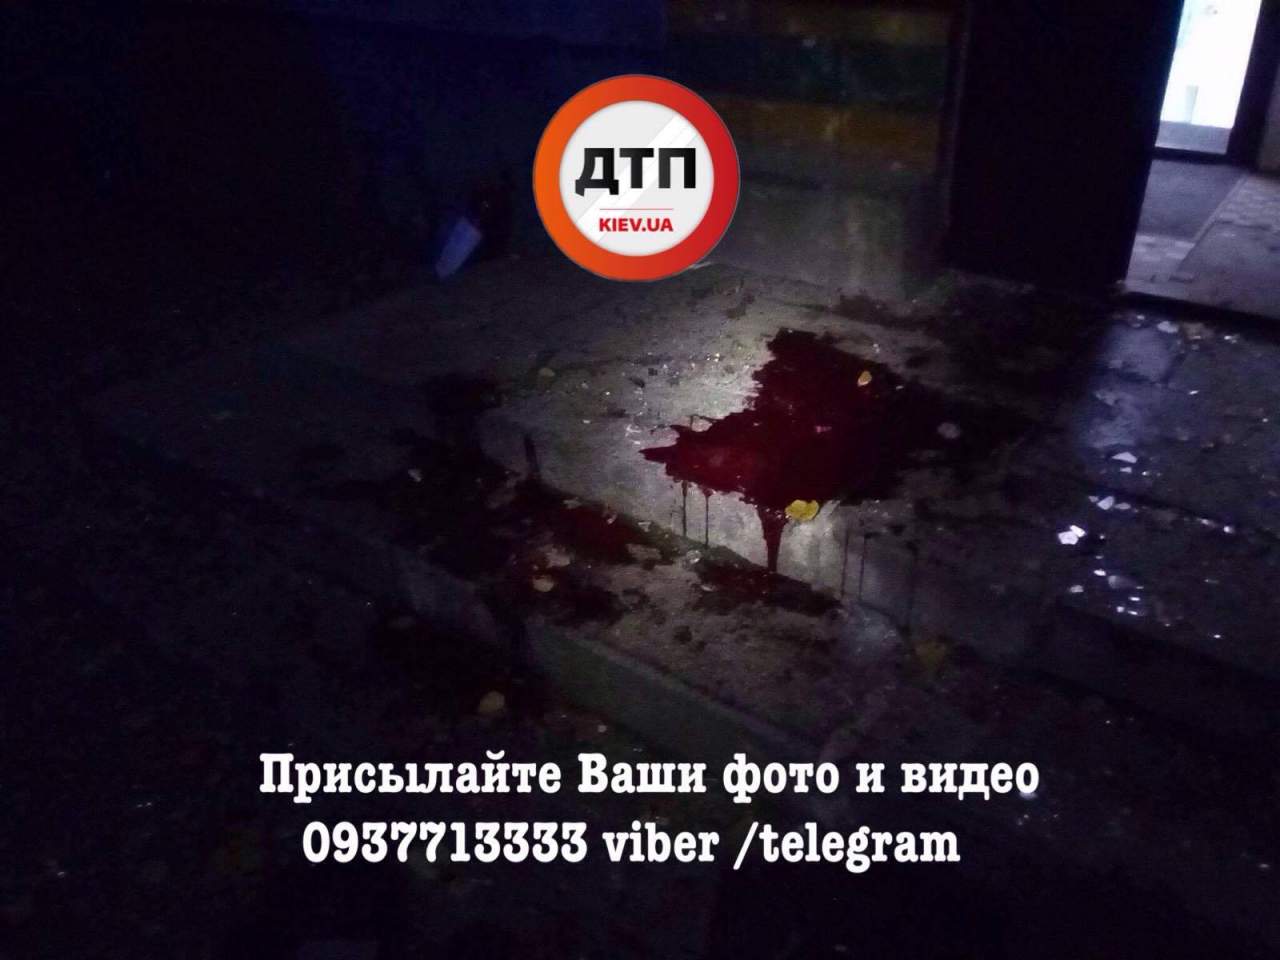 Подробности покушения на депутата от "Радикальной партии" Мосийчука: пострадали 4 человека (фото)